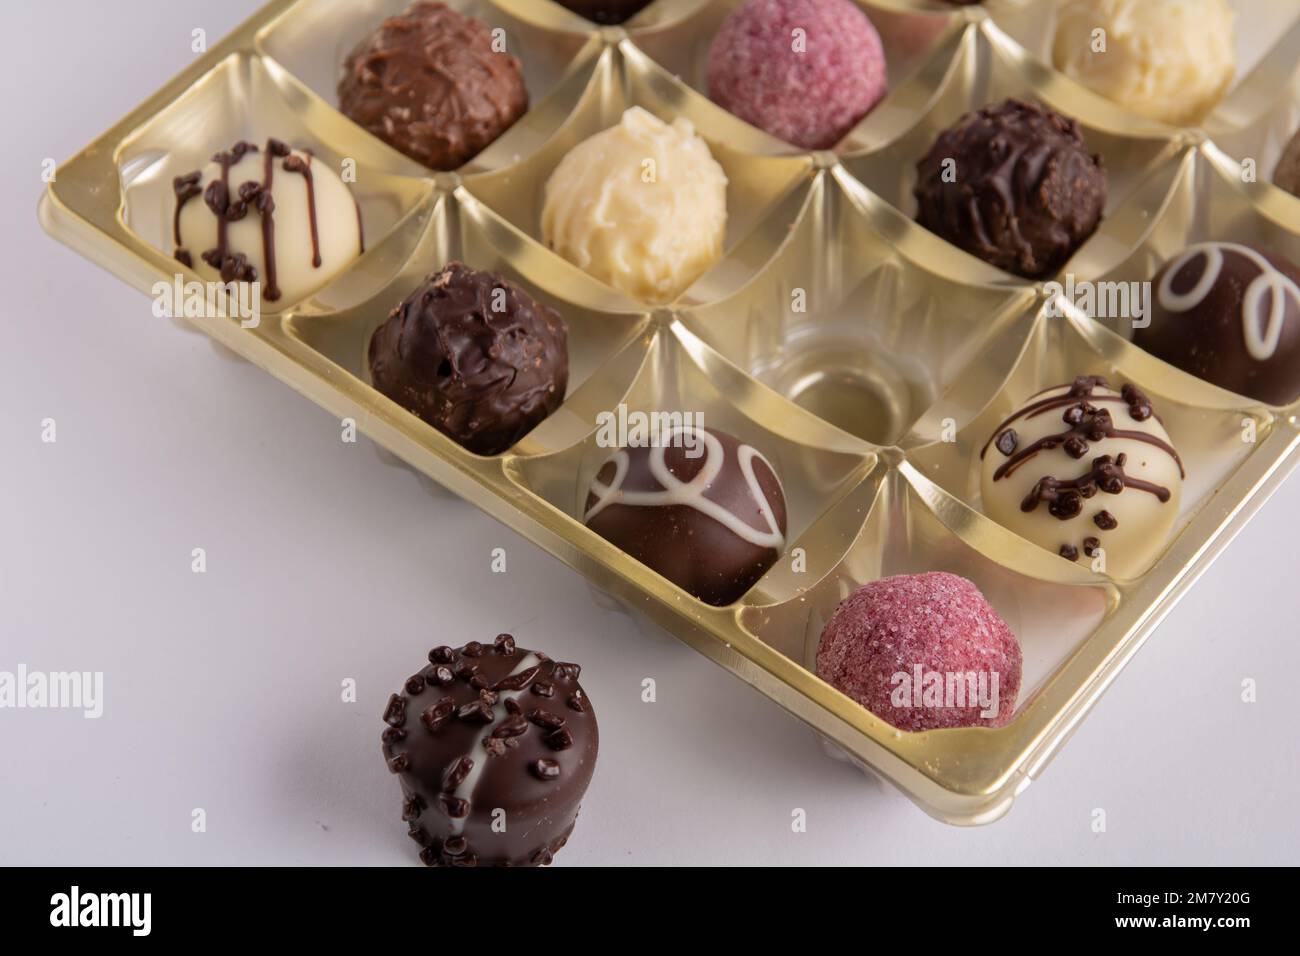 chocolats photo dans une boîte un bonbon se trouve à côté de la boîte Banque D'Images